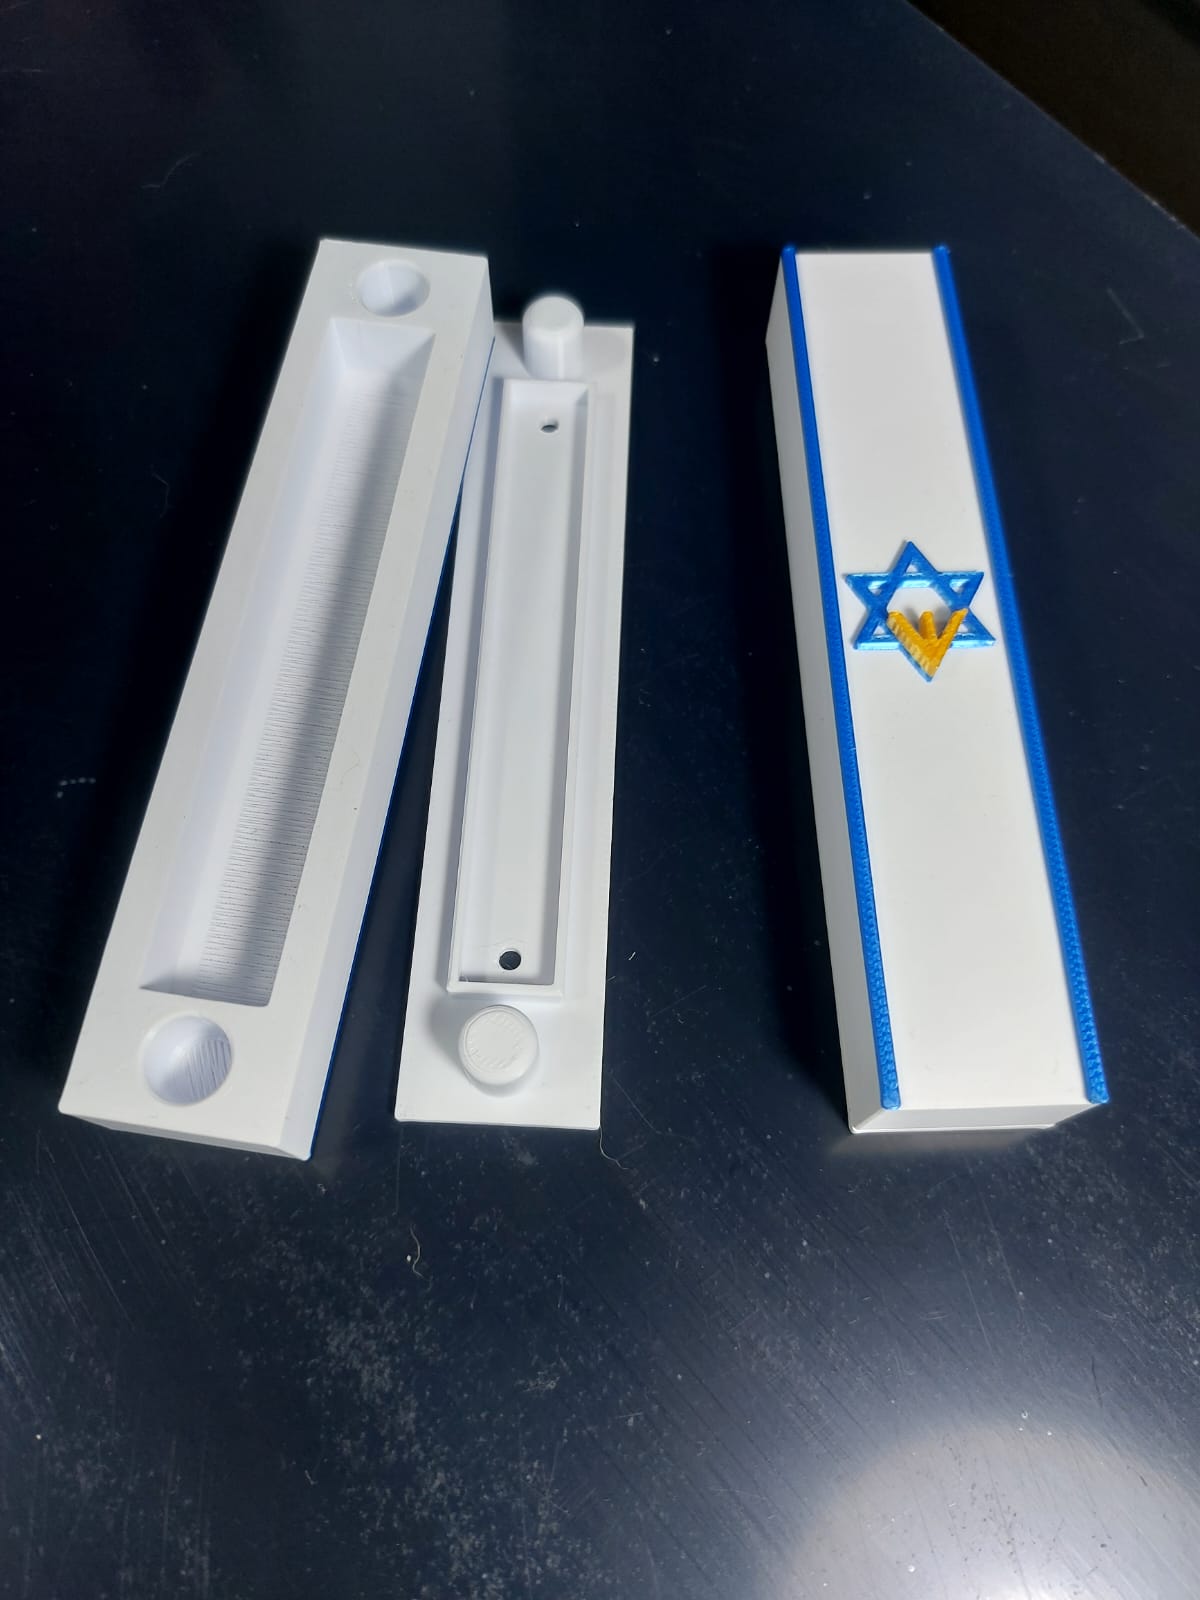 בית מזוזה ארץ ישראלית עם האותיות של שומר דלתות ישראל